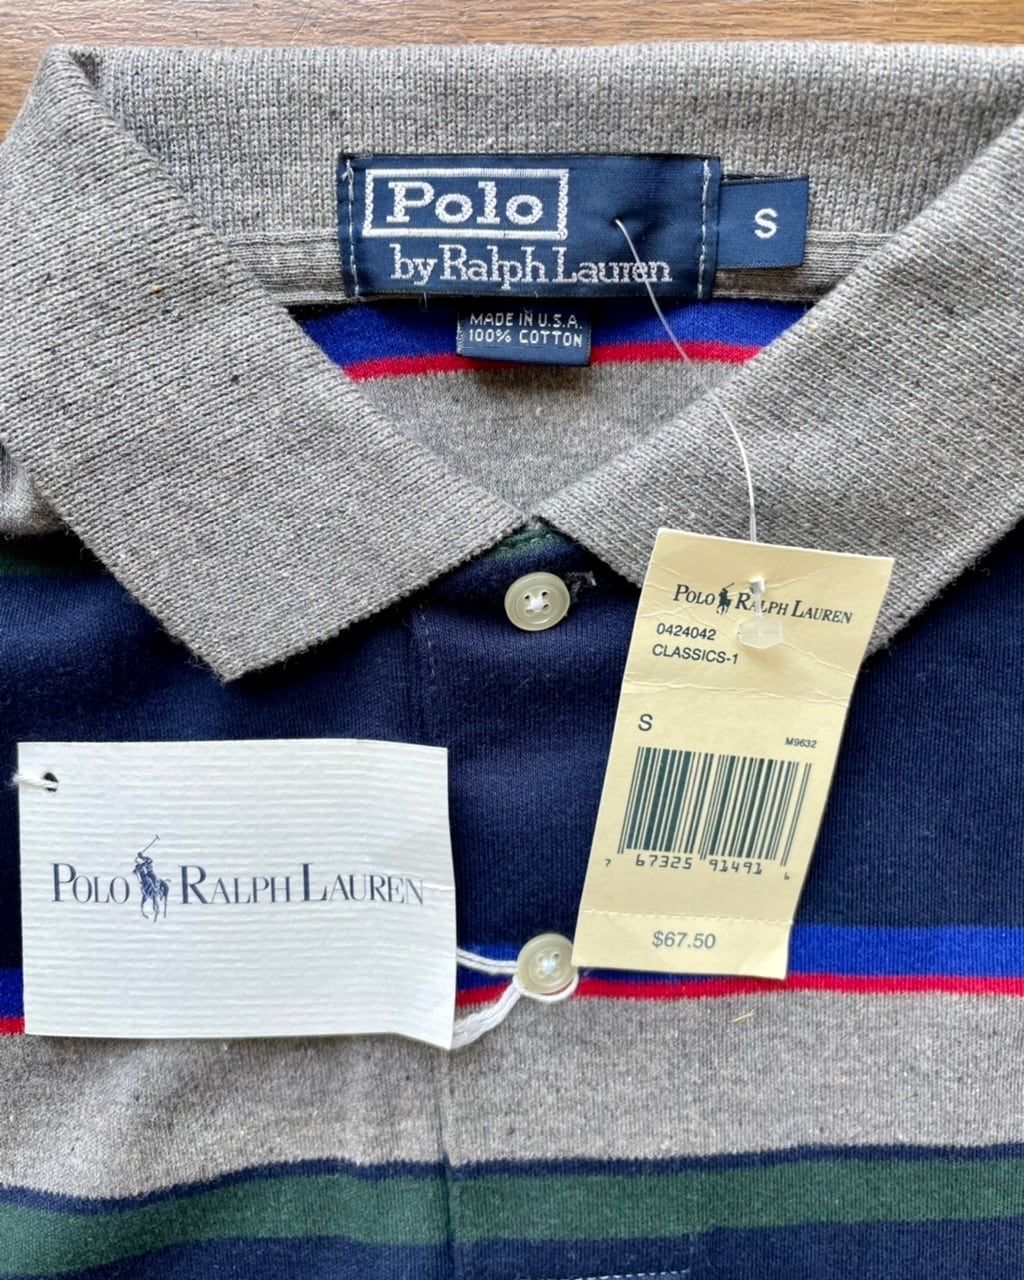 90年代 NOS(新古品) 米国製希少 Polo by Ralph Lauren 長袖 ボーダー 